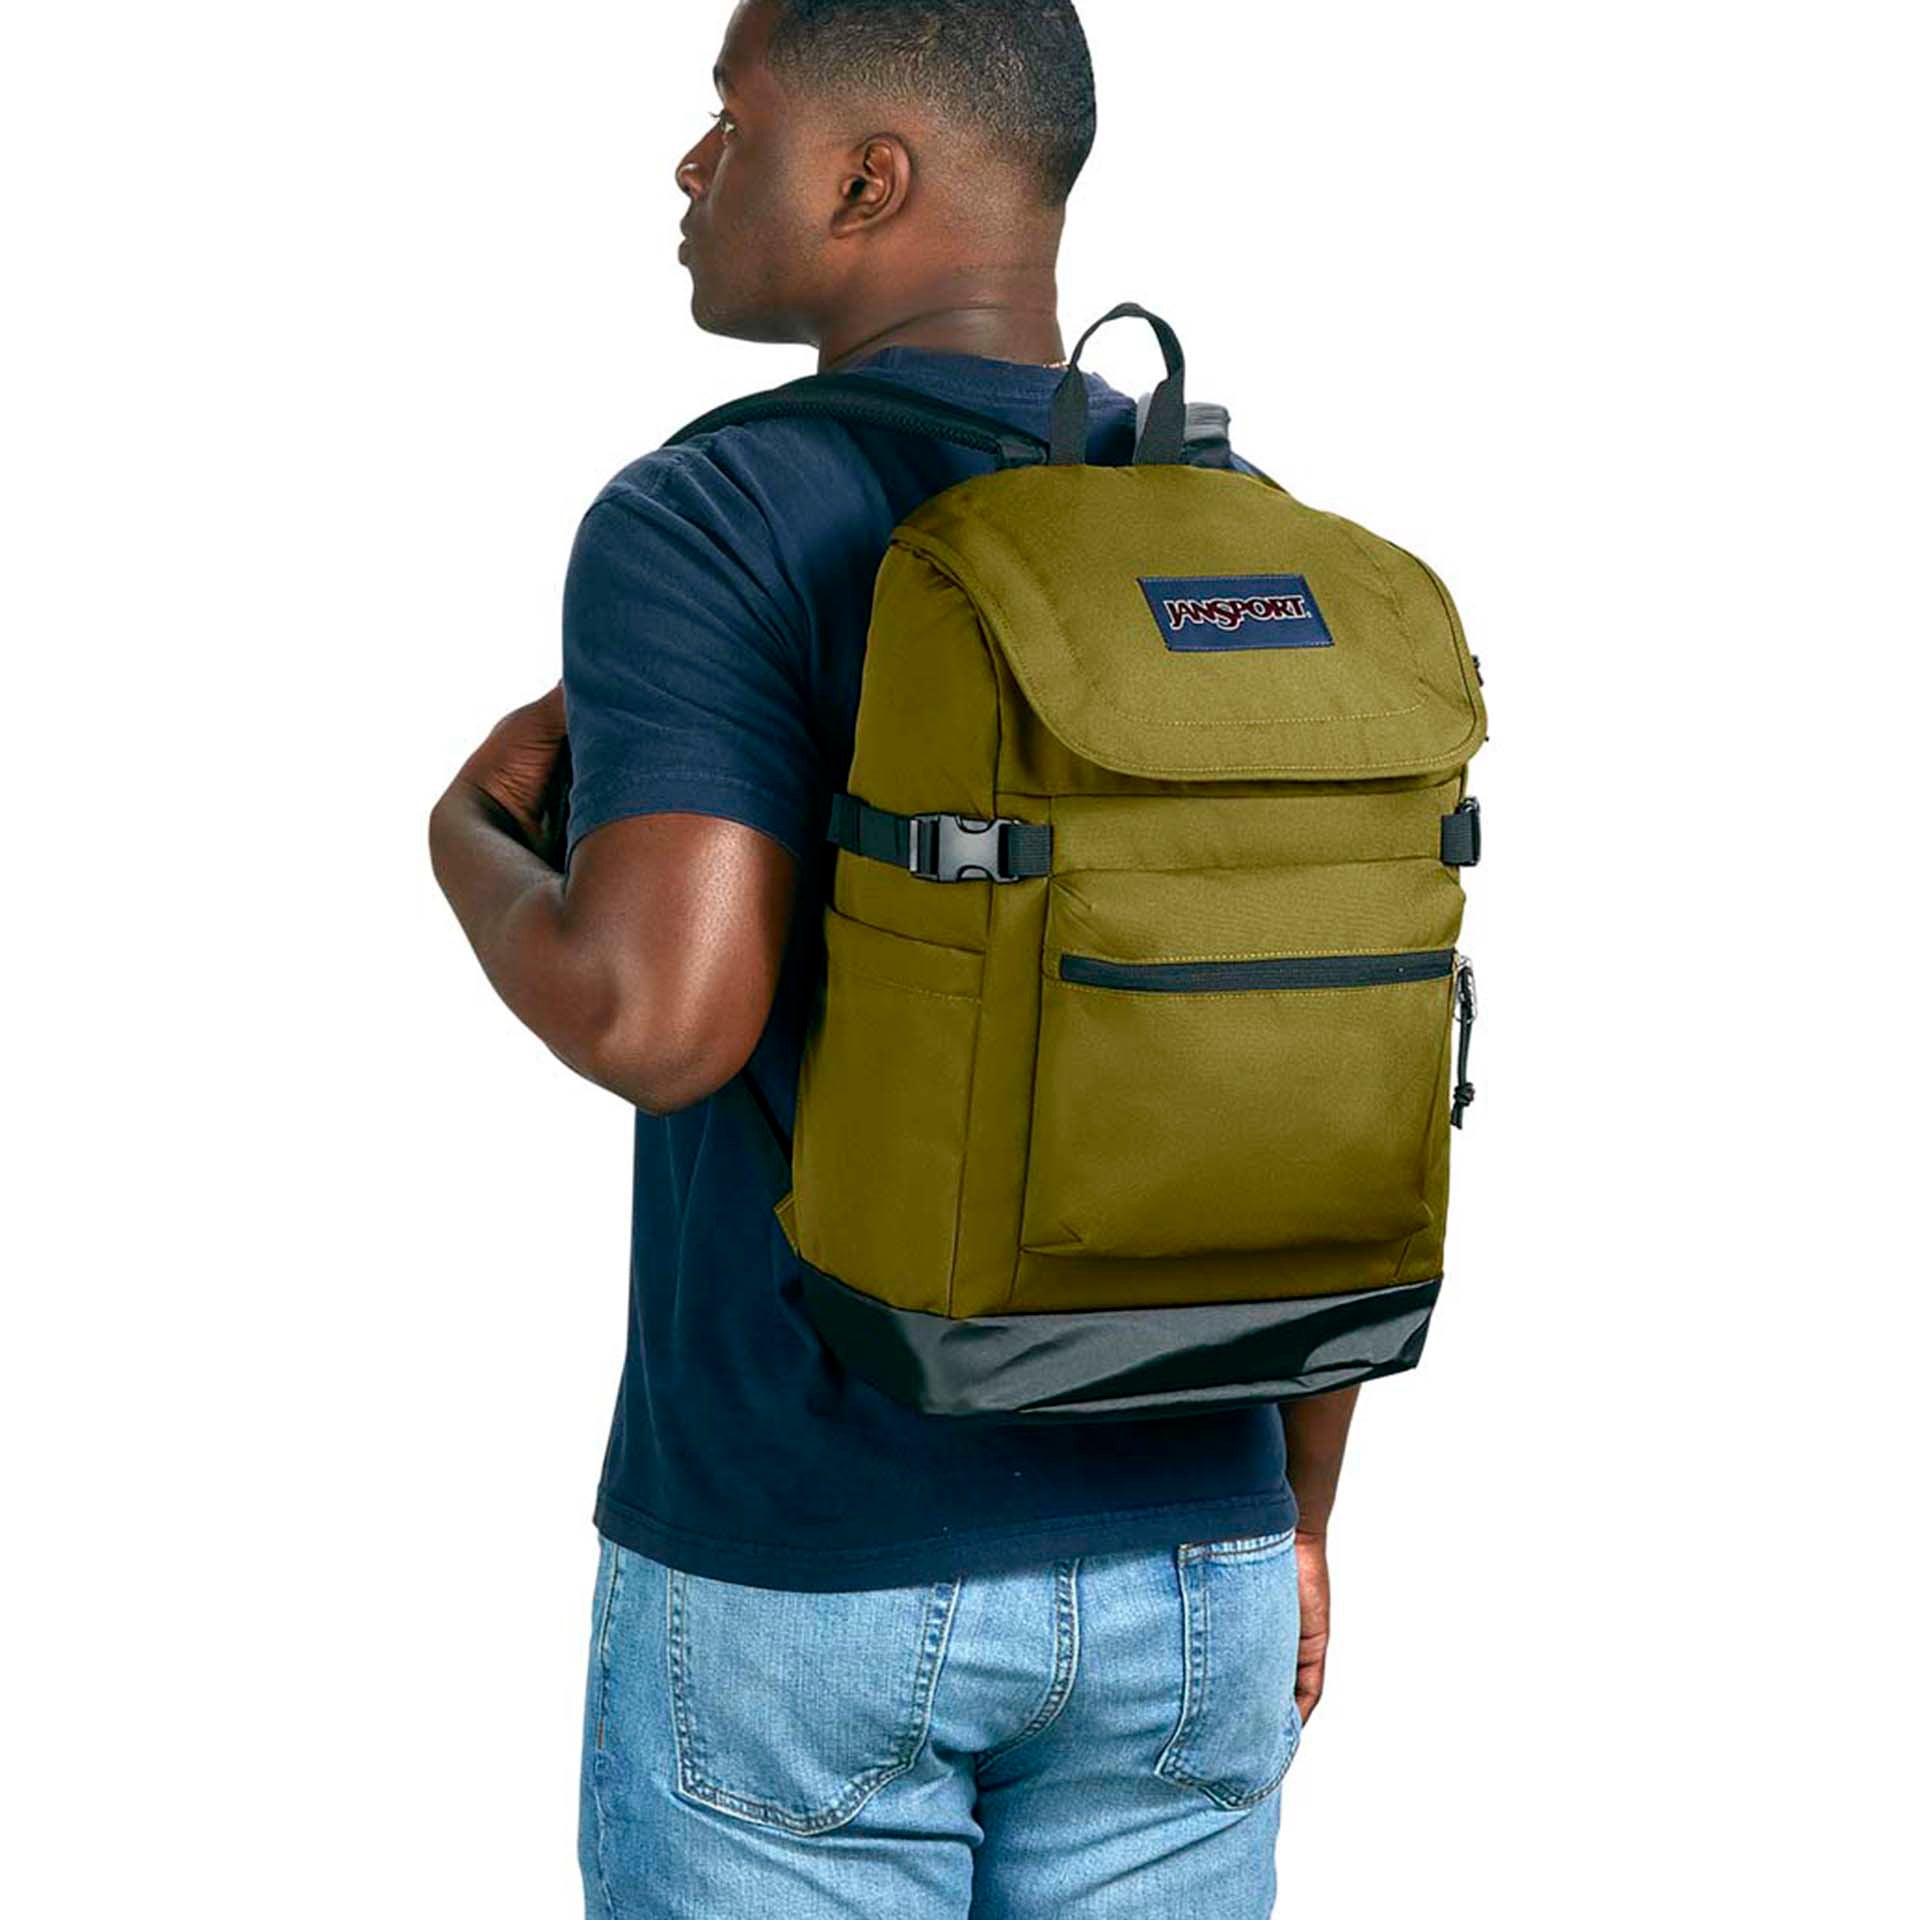 Jansport White Backpack Bag For Men Mens Fashion Bags Backpacks on  Carousell